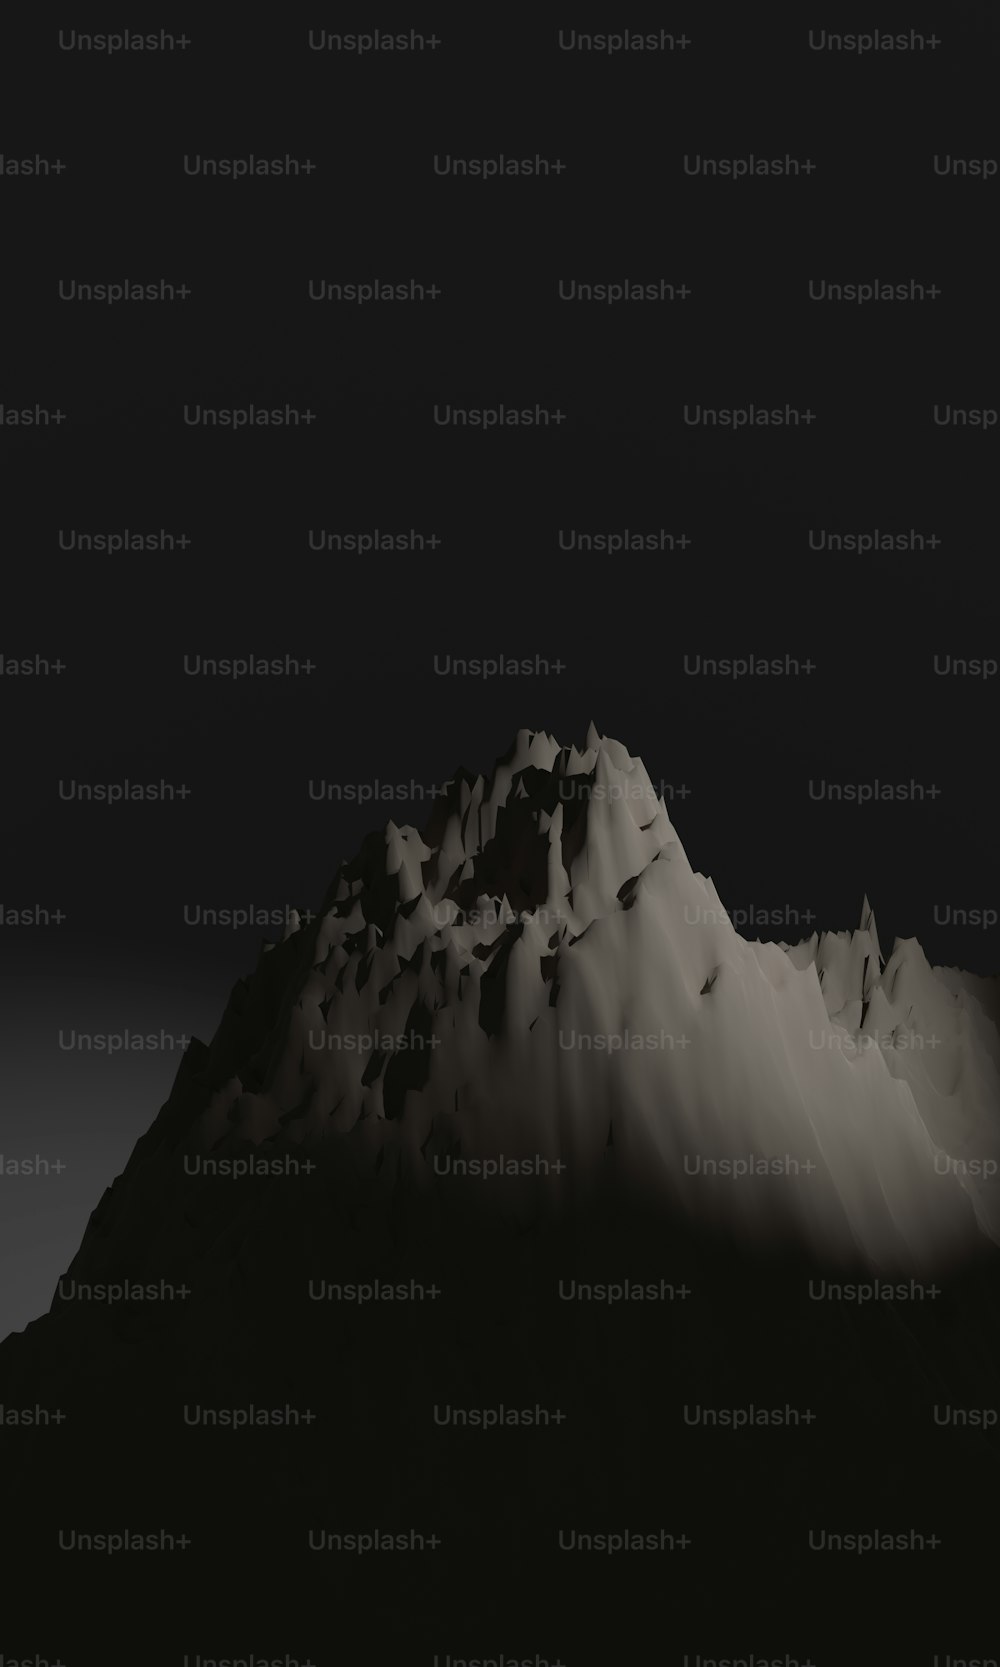 Une photo en noir et blanc d’une montagne enneigée